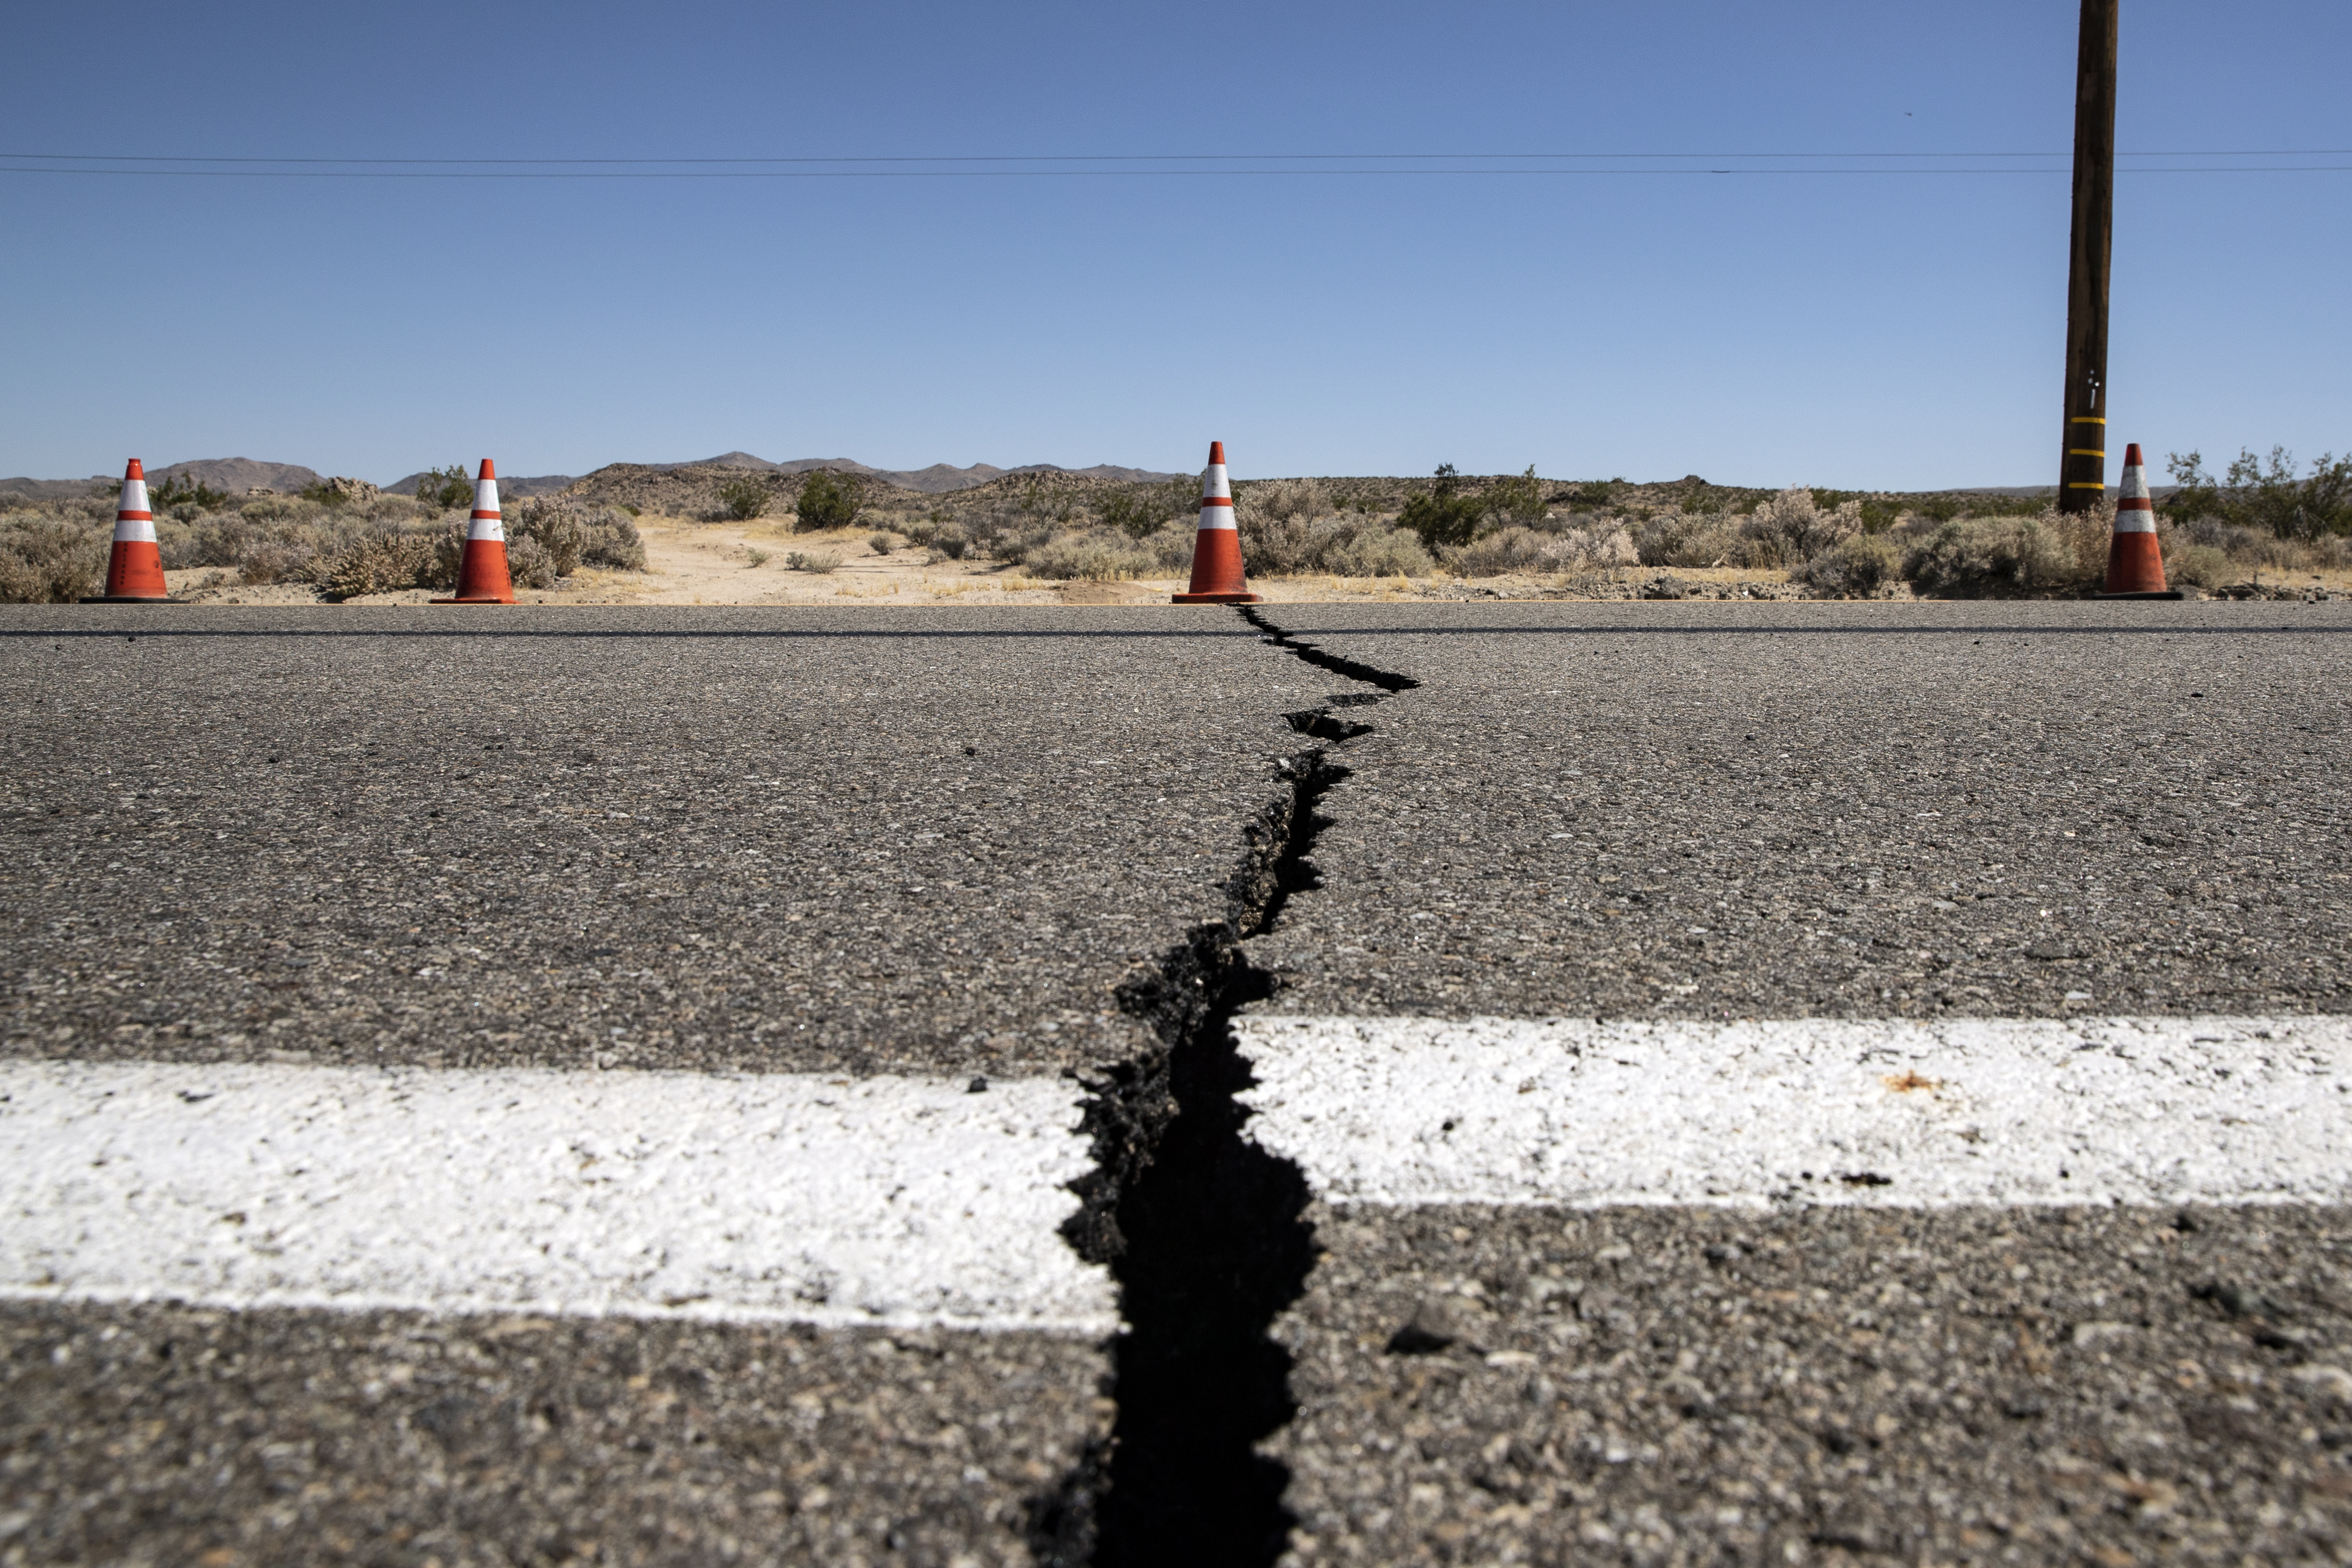 В четвъртък земетресение с магнитуд 6,4 беше регистрирано в Южна Калифорния близо до град Риджкрест, на около 175 км североизточно от Лос Анджелис, на дълбочина от 9 км, съобщи Геофизичният институт на САЩ. То се смята за най-голямото в Южна Калифорния след земетресението с магнитуд 6,6 от 1994 г. в Нортридж, което стана в гъстонаселен район на Лос Анджелис и причини щети за милиарди долари.